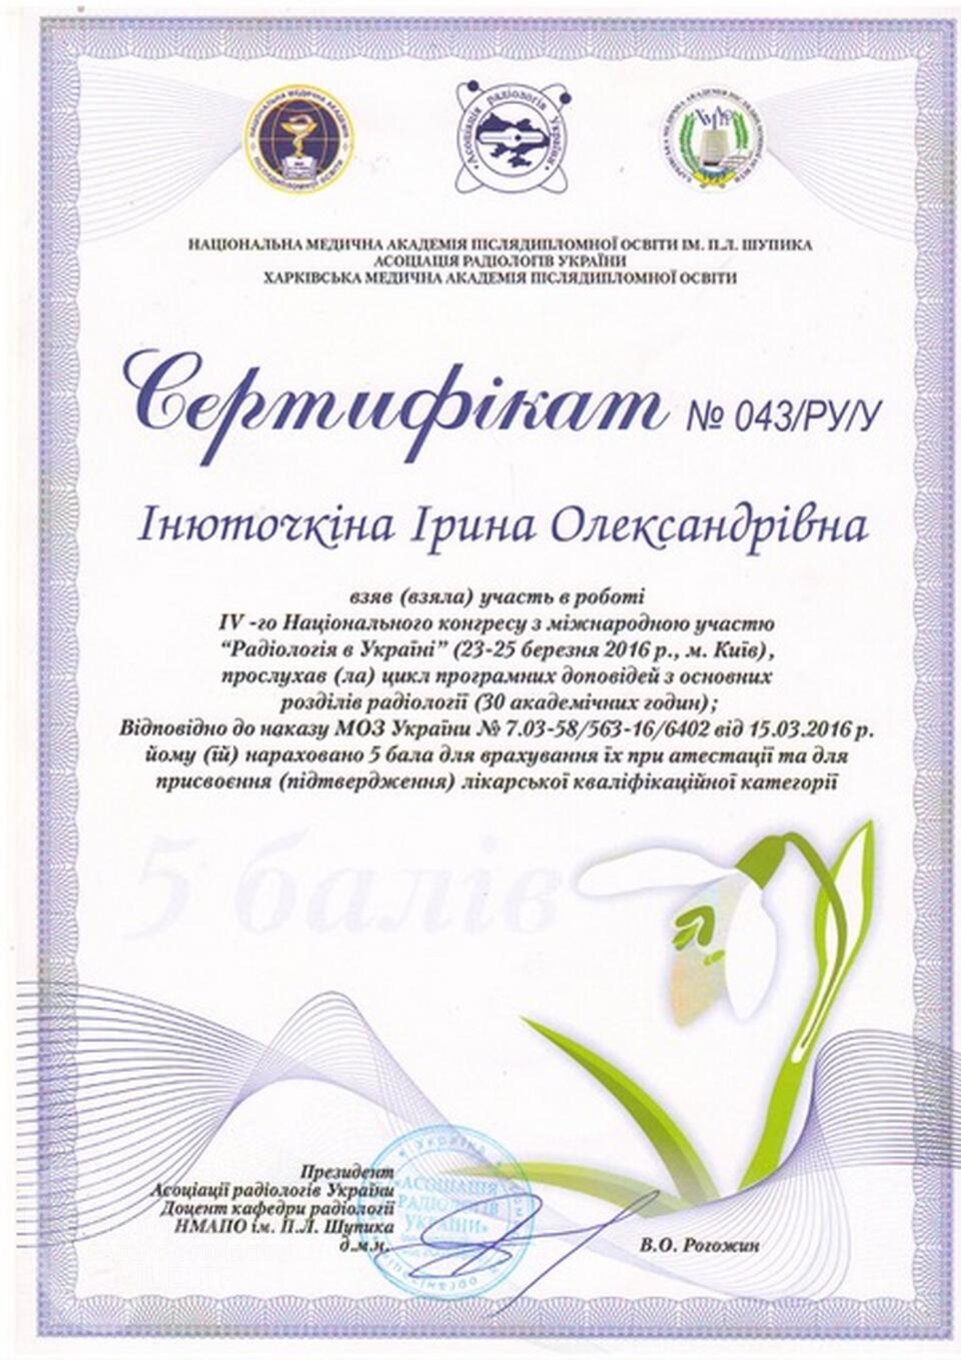 certificates/inyutochkina-irina-oleksandrivna/cert-inutochkina-20.jpg